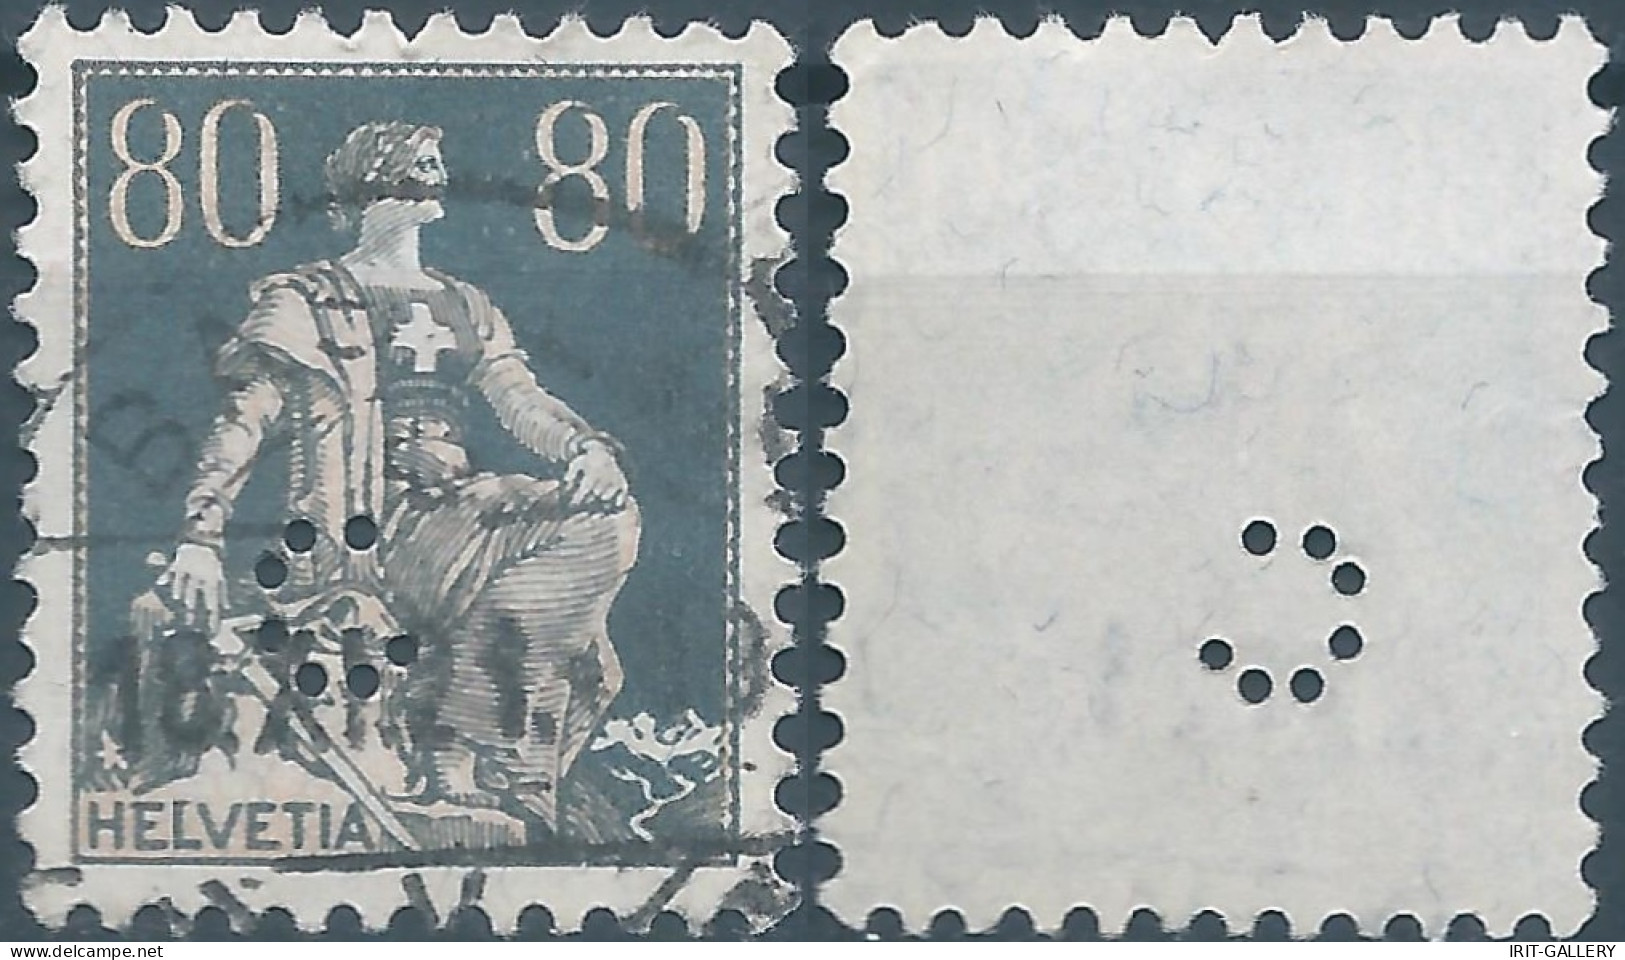 Svizzera-Switzerland-Schweiz-Suisse,HELVETIA,1915 -1918 , Helvetia With The Sword 80(C)grey (PERFIN) - Gezähnt (perforiert)